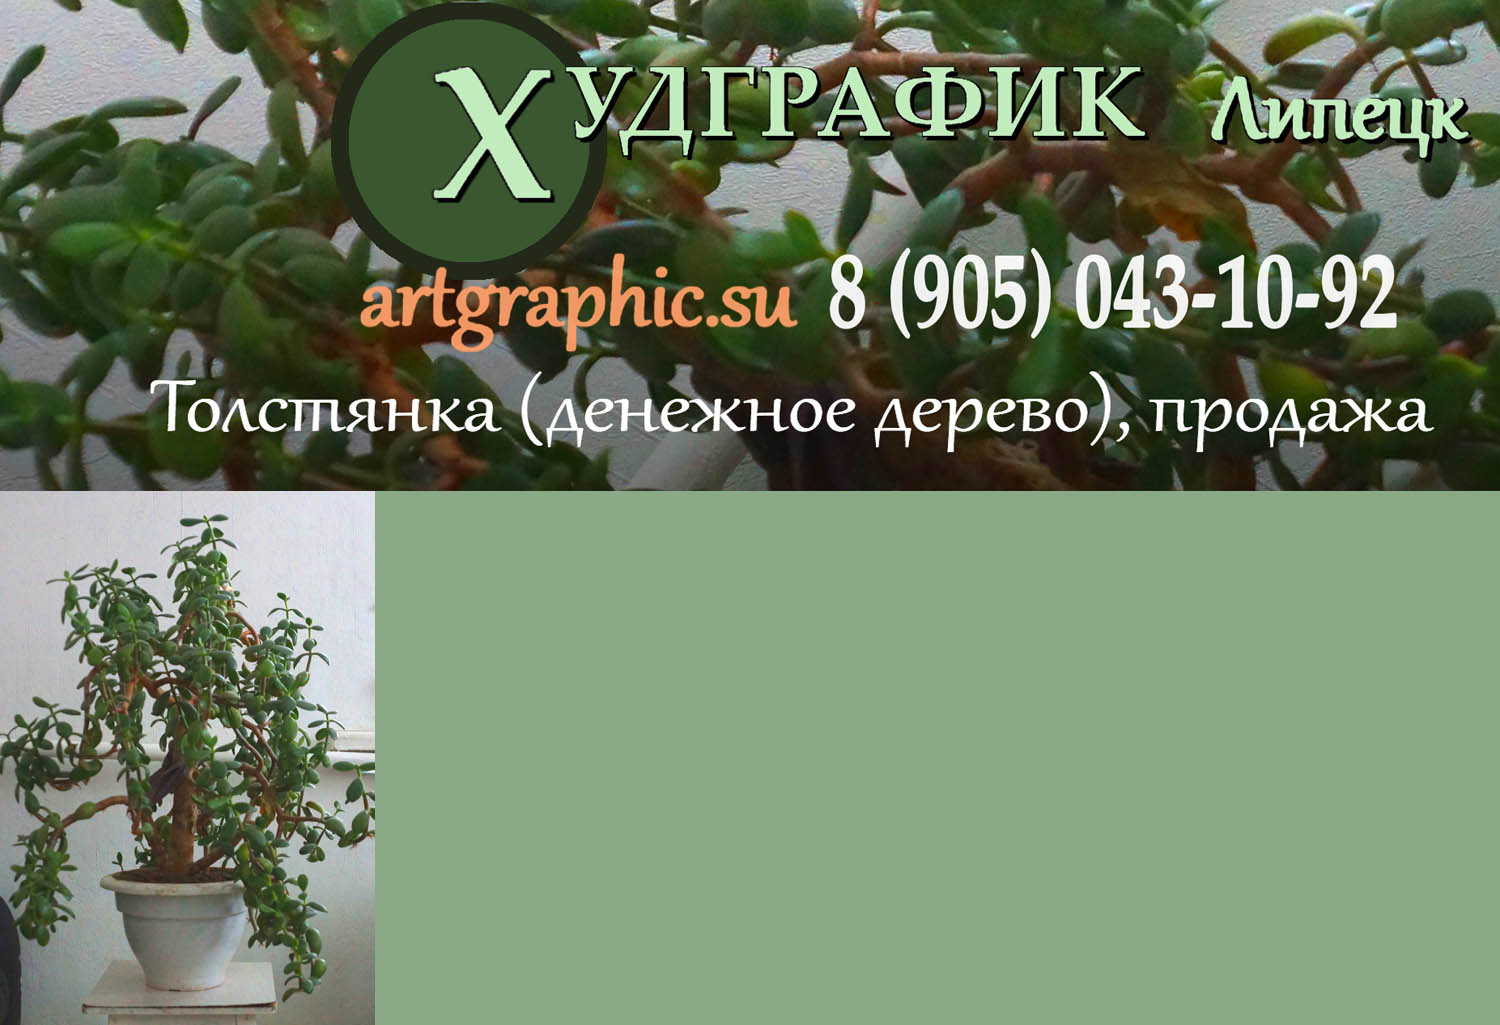  Худграфик. Частное объявление: купить домашнее растение денежное дерево толстянка, продажа в Липецке, черенки